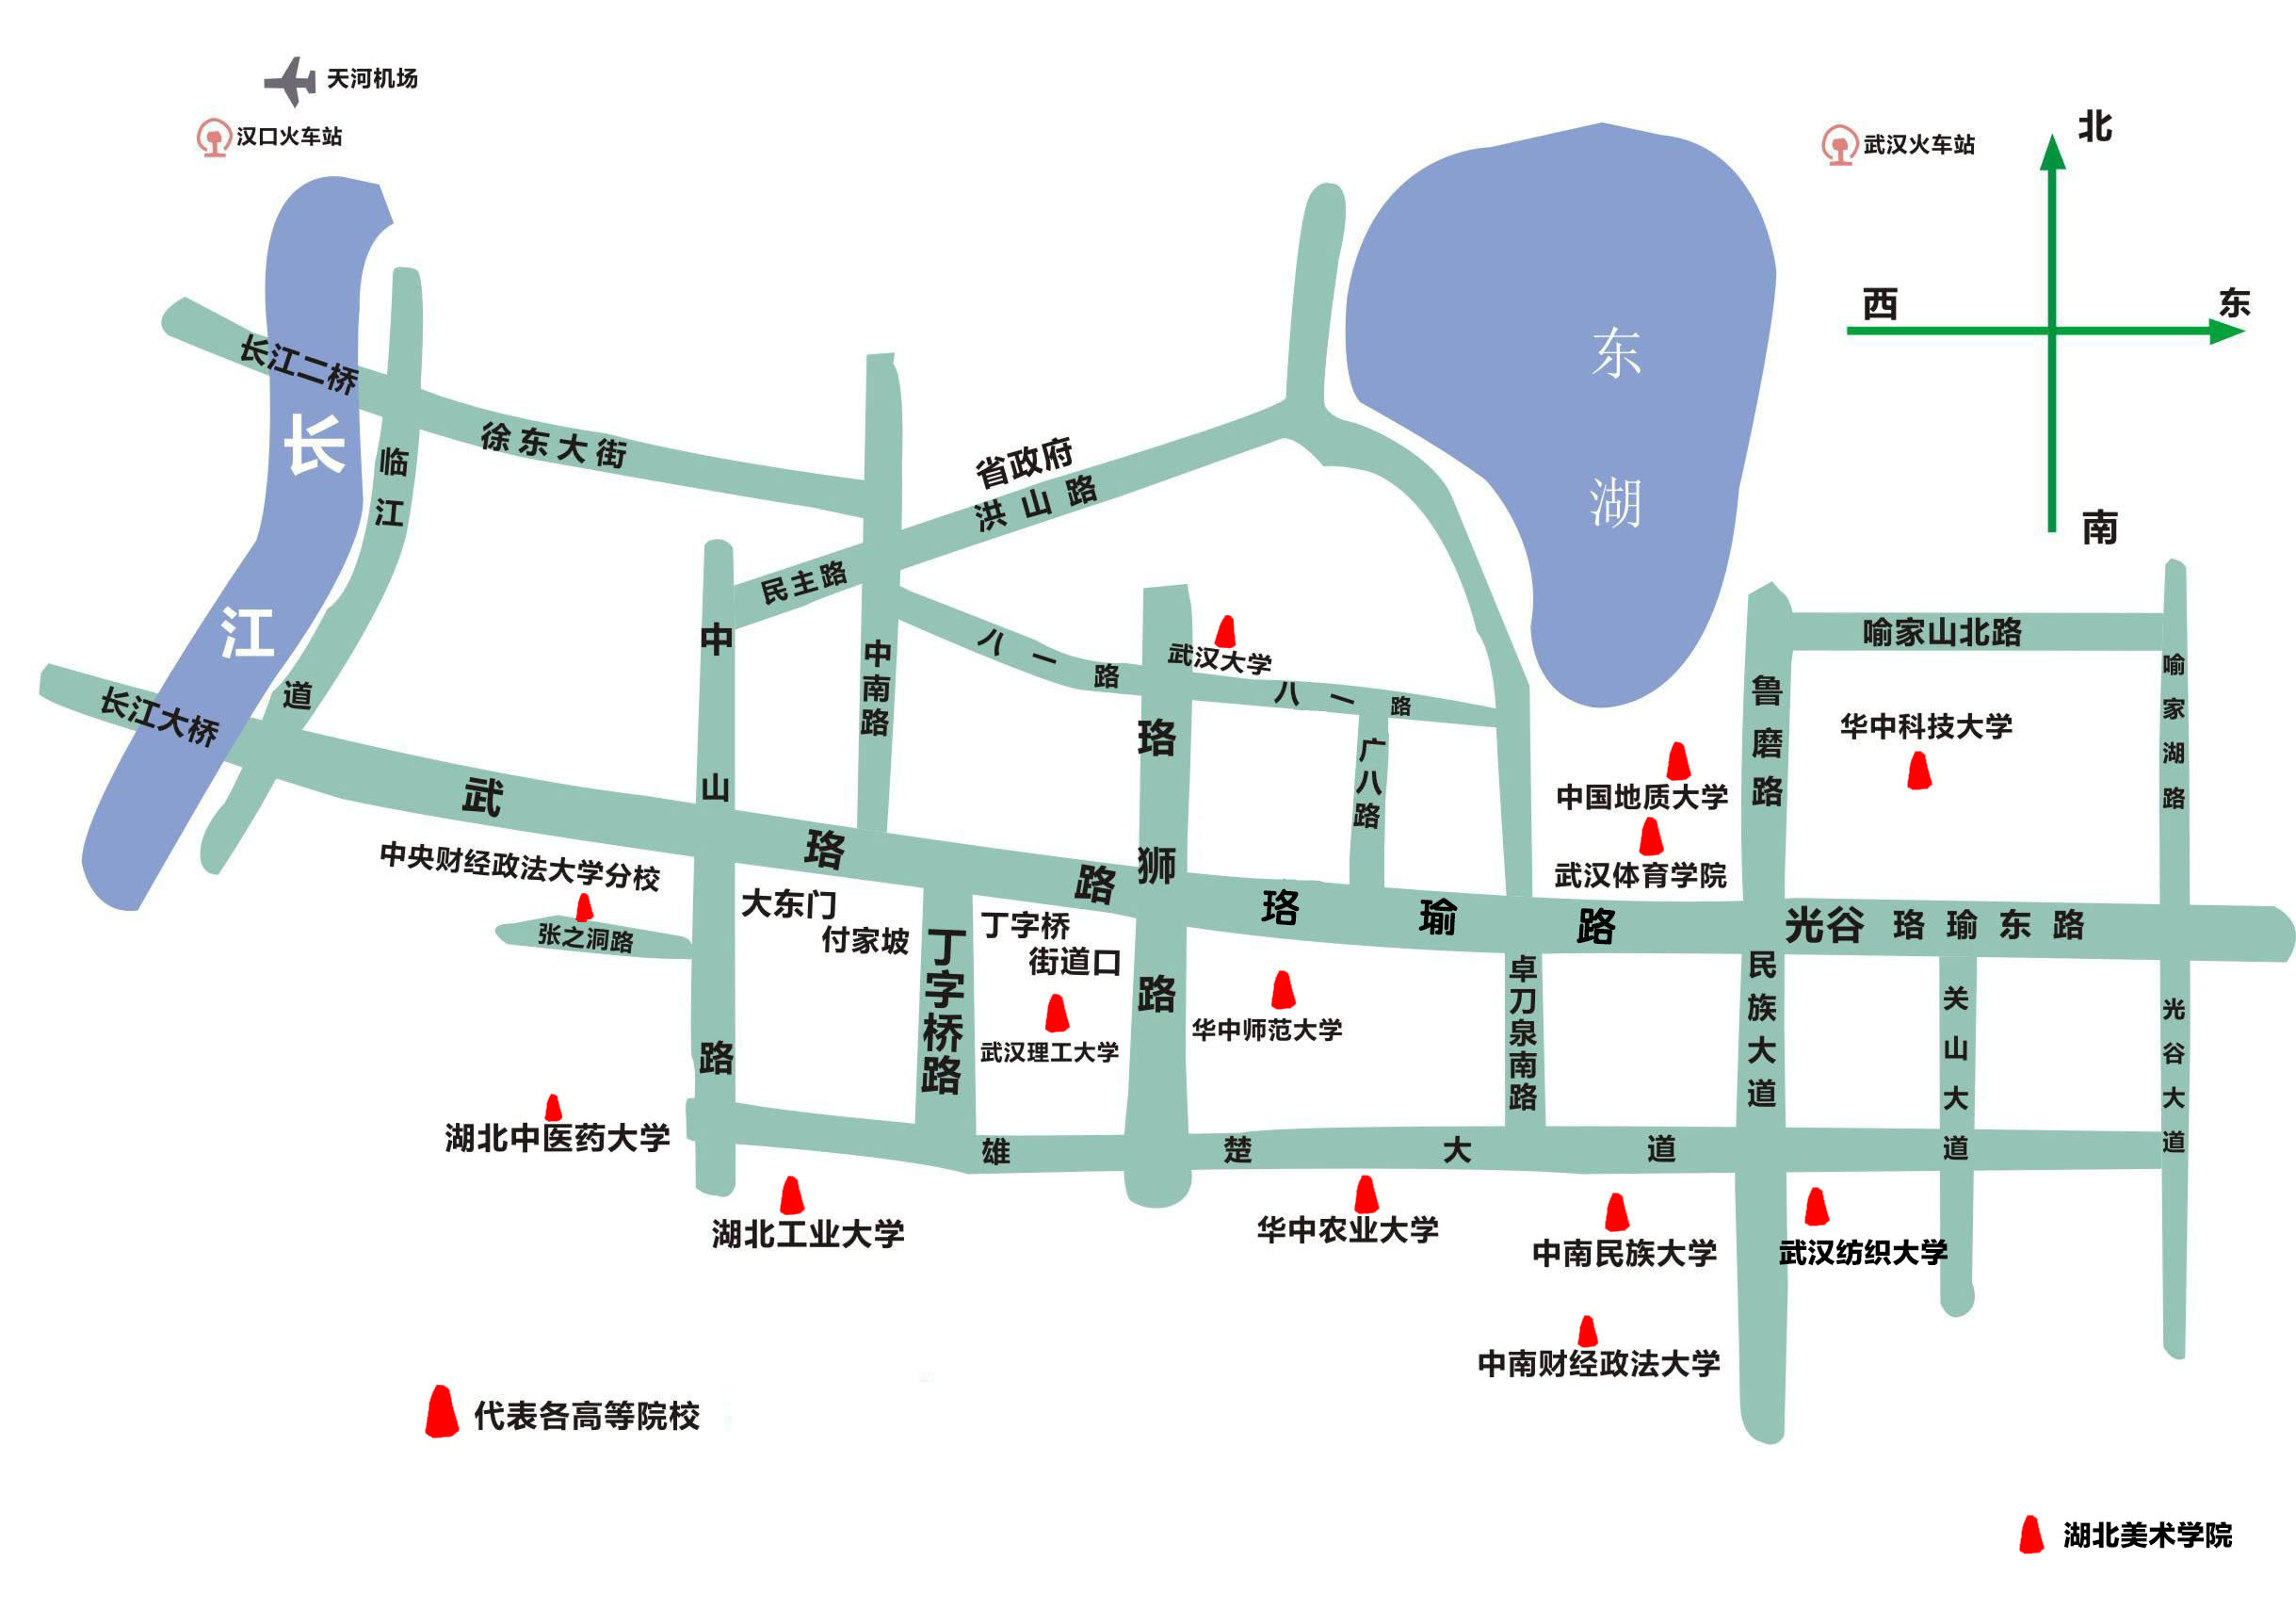 已基本辐射高校云集的武汉各大片区,如光谷广场附近的华中科技大学